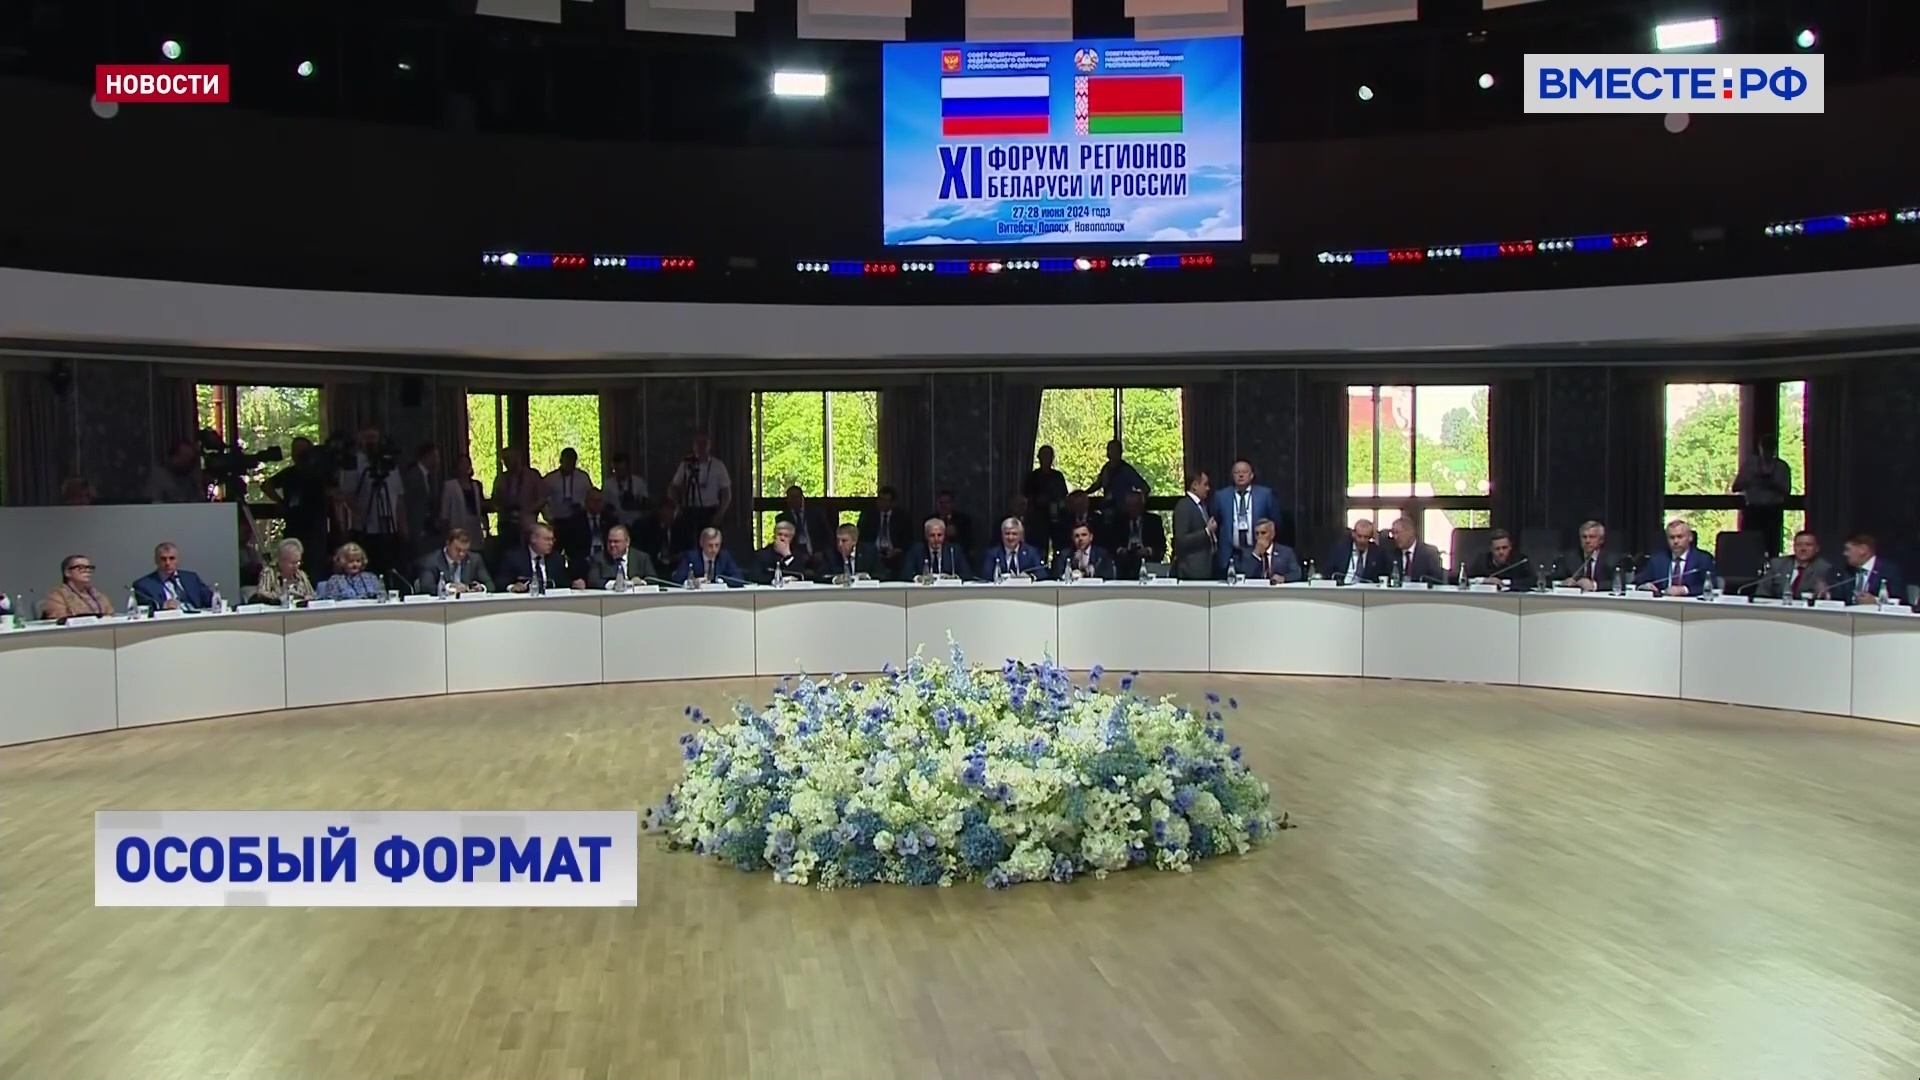 Межрегиональное сотрудничество России и Белоруссии - каркас союза двух стран, считает Матвиенко